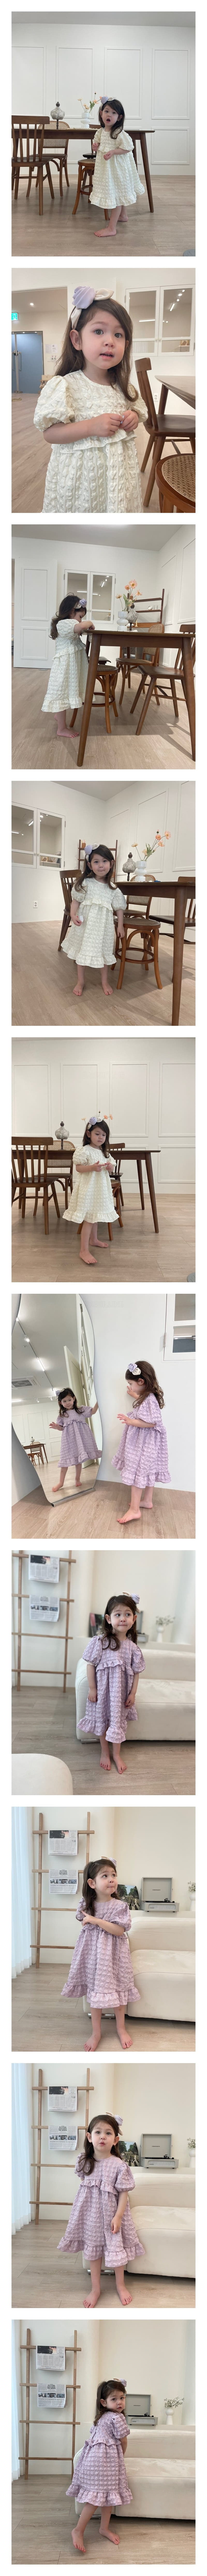 Flower J - Korean Children Fashion - #todddlerfashion - Lilac One-piece